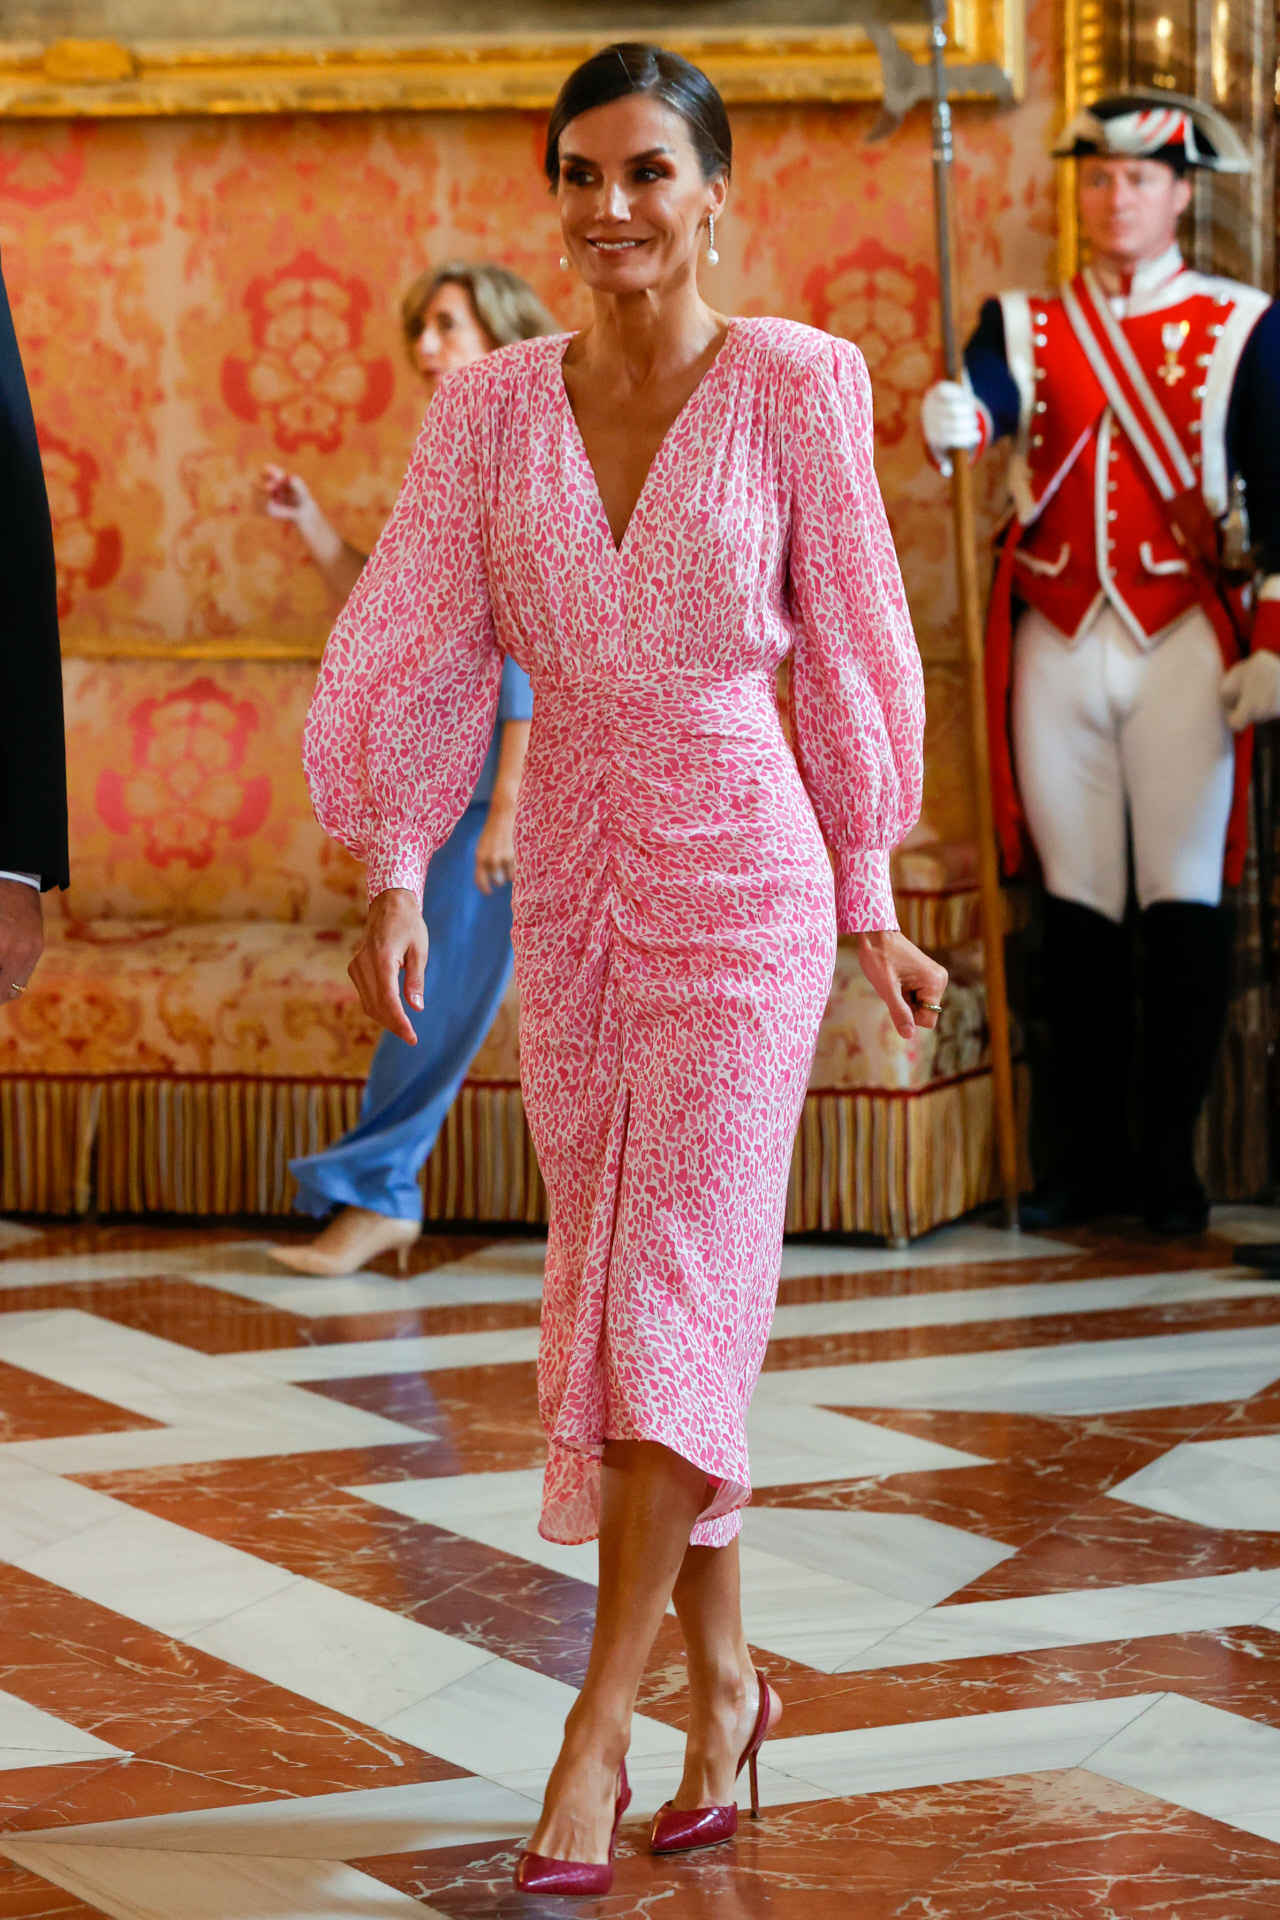 aprobar residuo Turismo La Reina Letizia estrena vestido rosa, su octavo modelo de este color en  tres meses | Reina Letizia